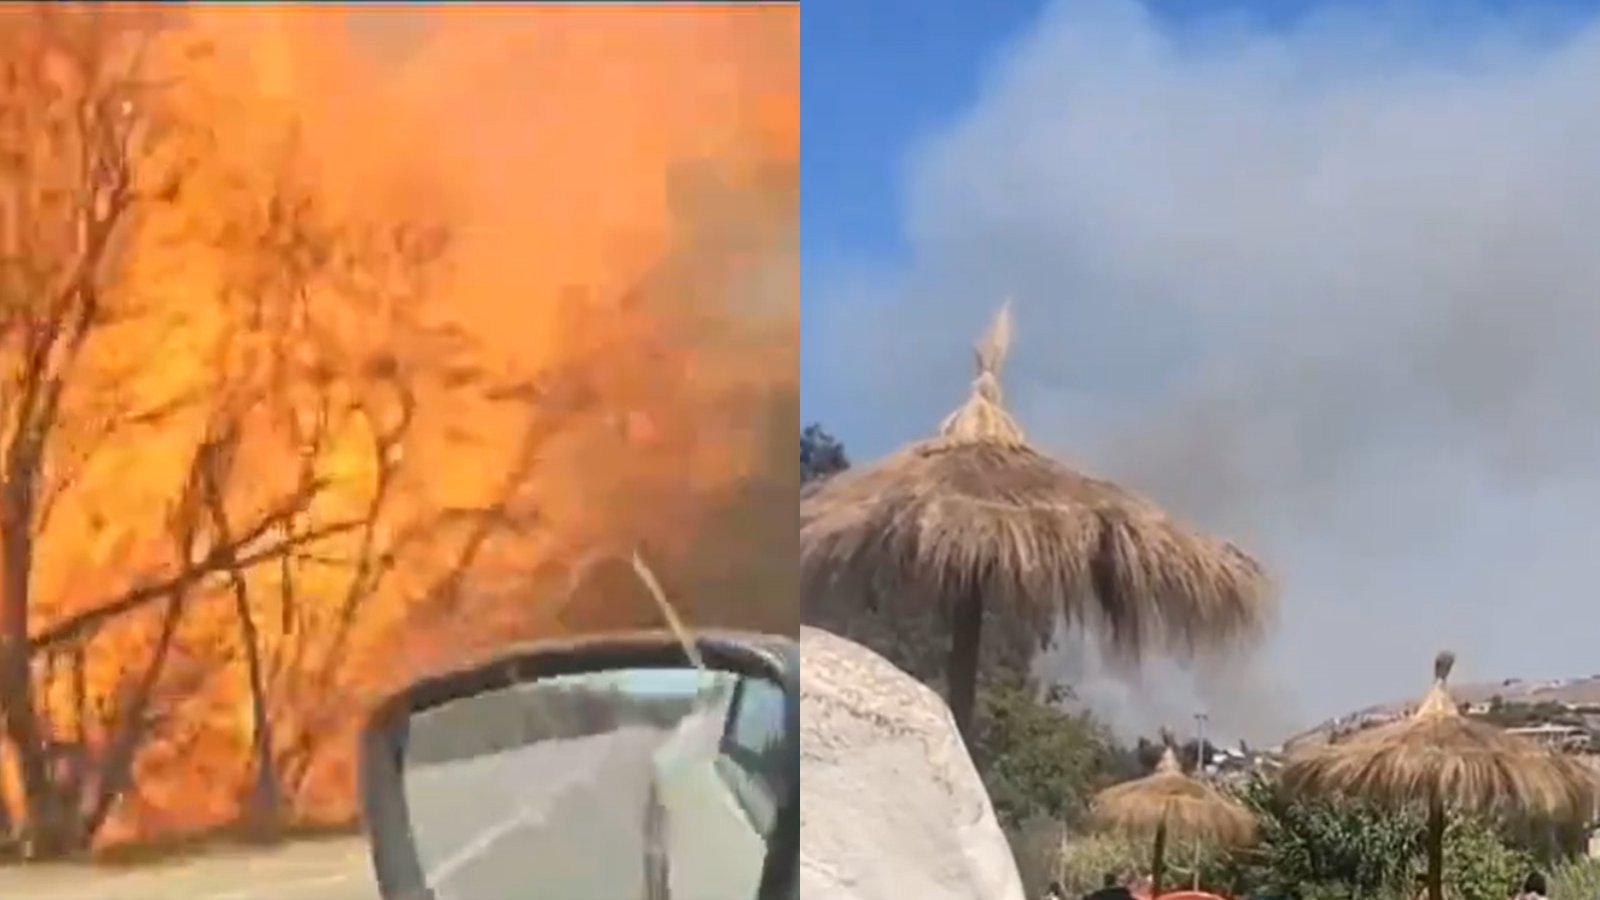 Cancelan Alerta Amarrilla y se declara Alerta Roja para Vallenar por incendio forestal